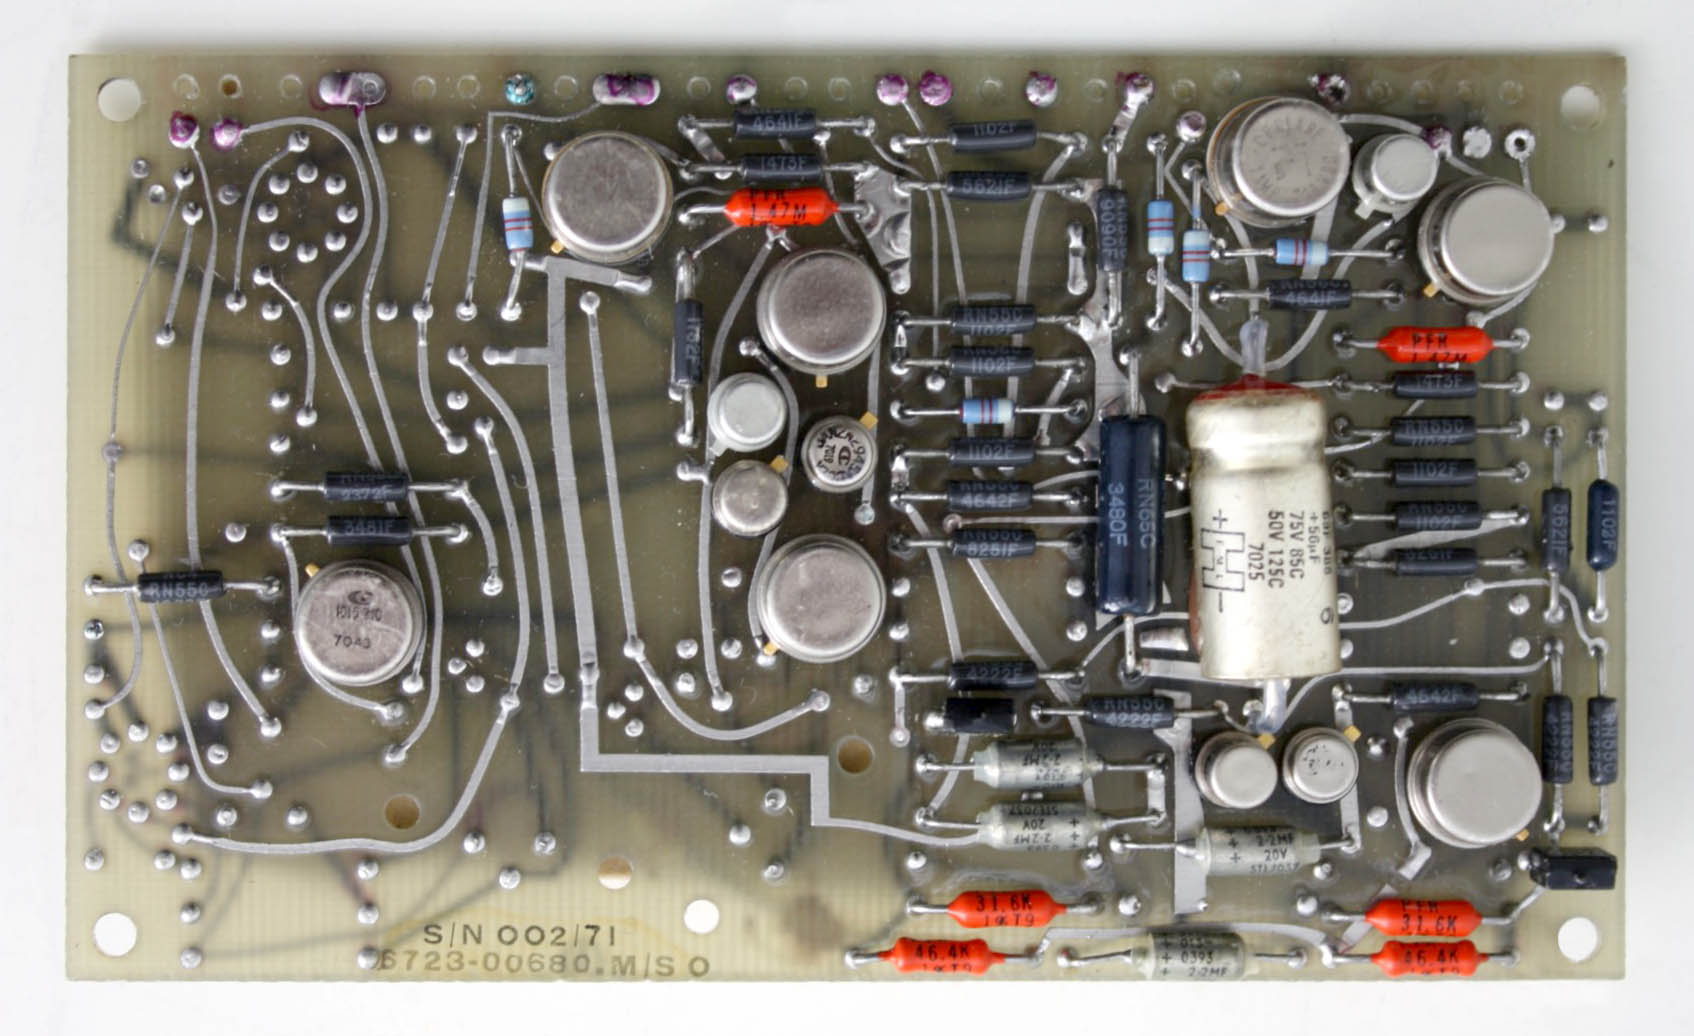 12V [Regulator] Circuit Board